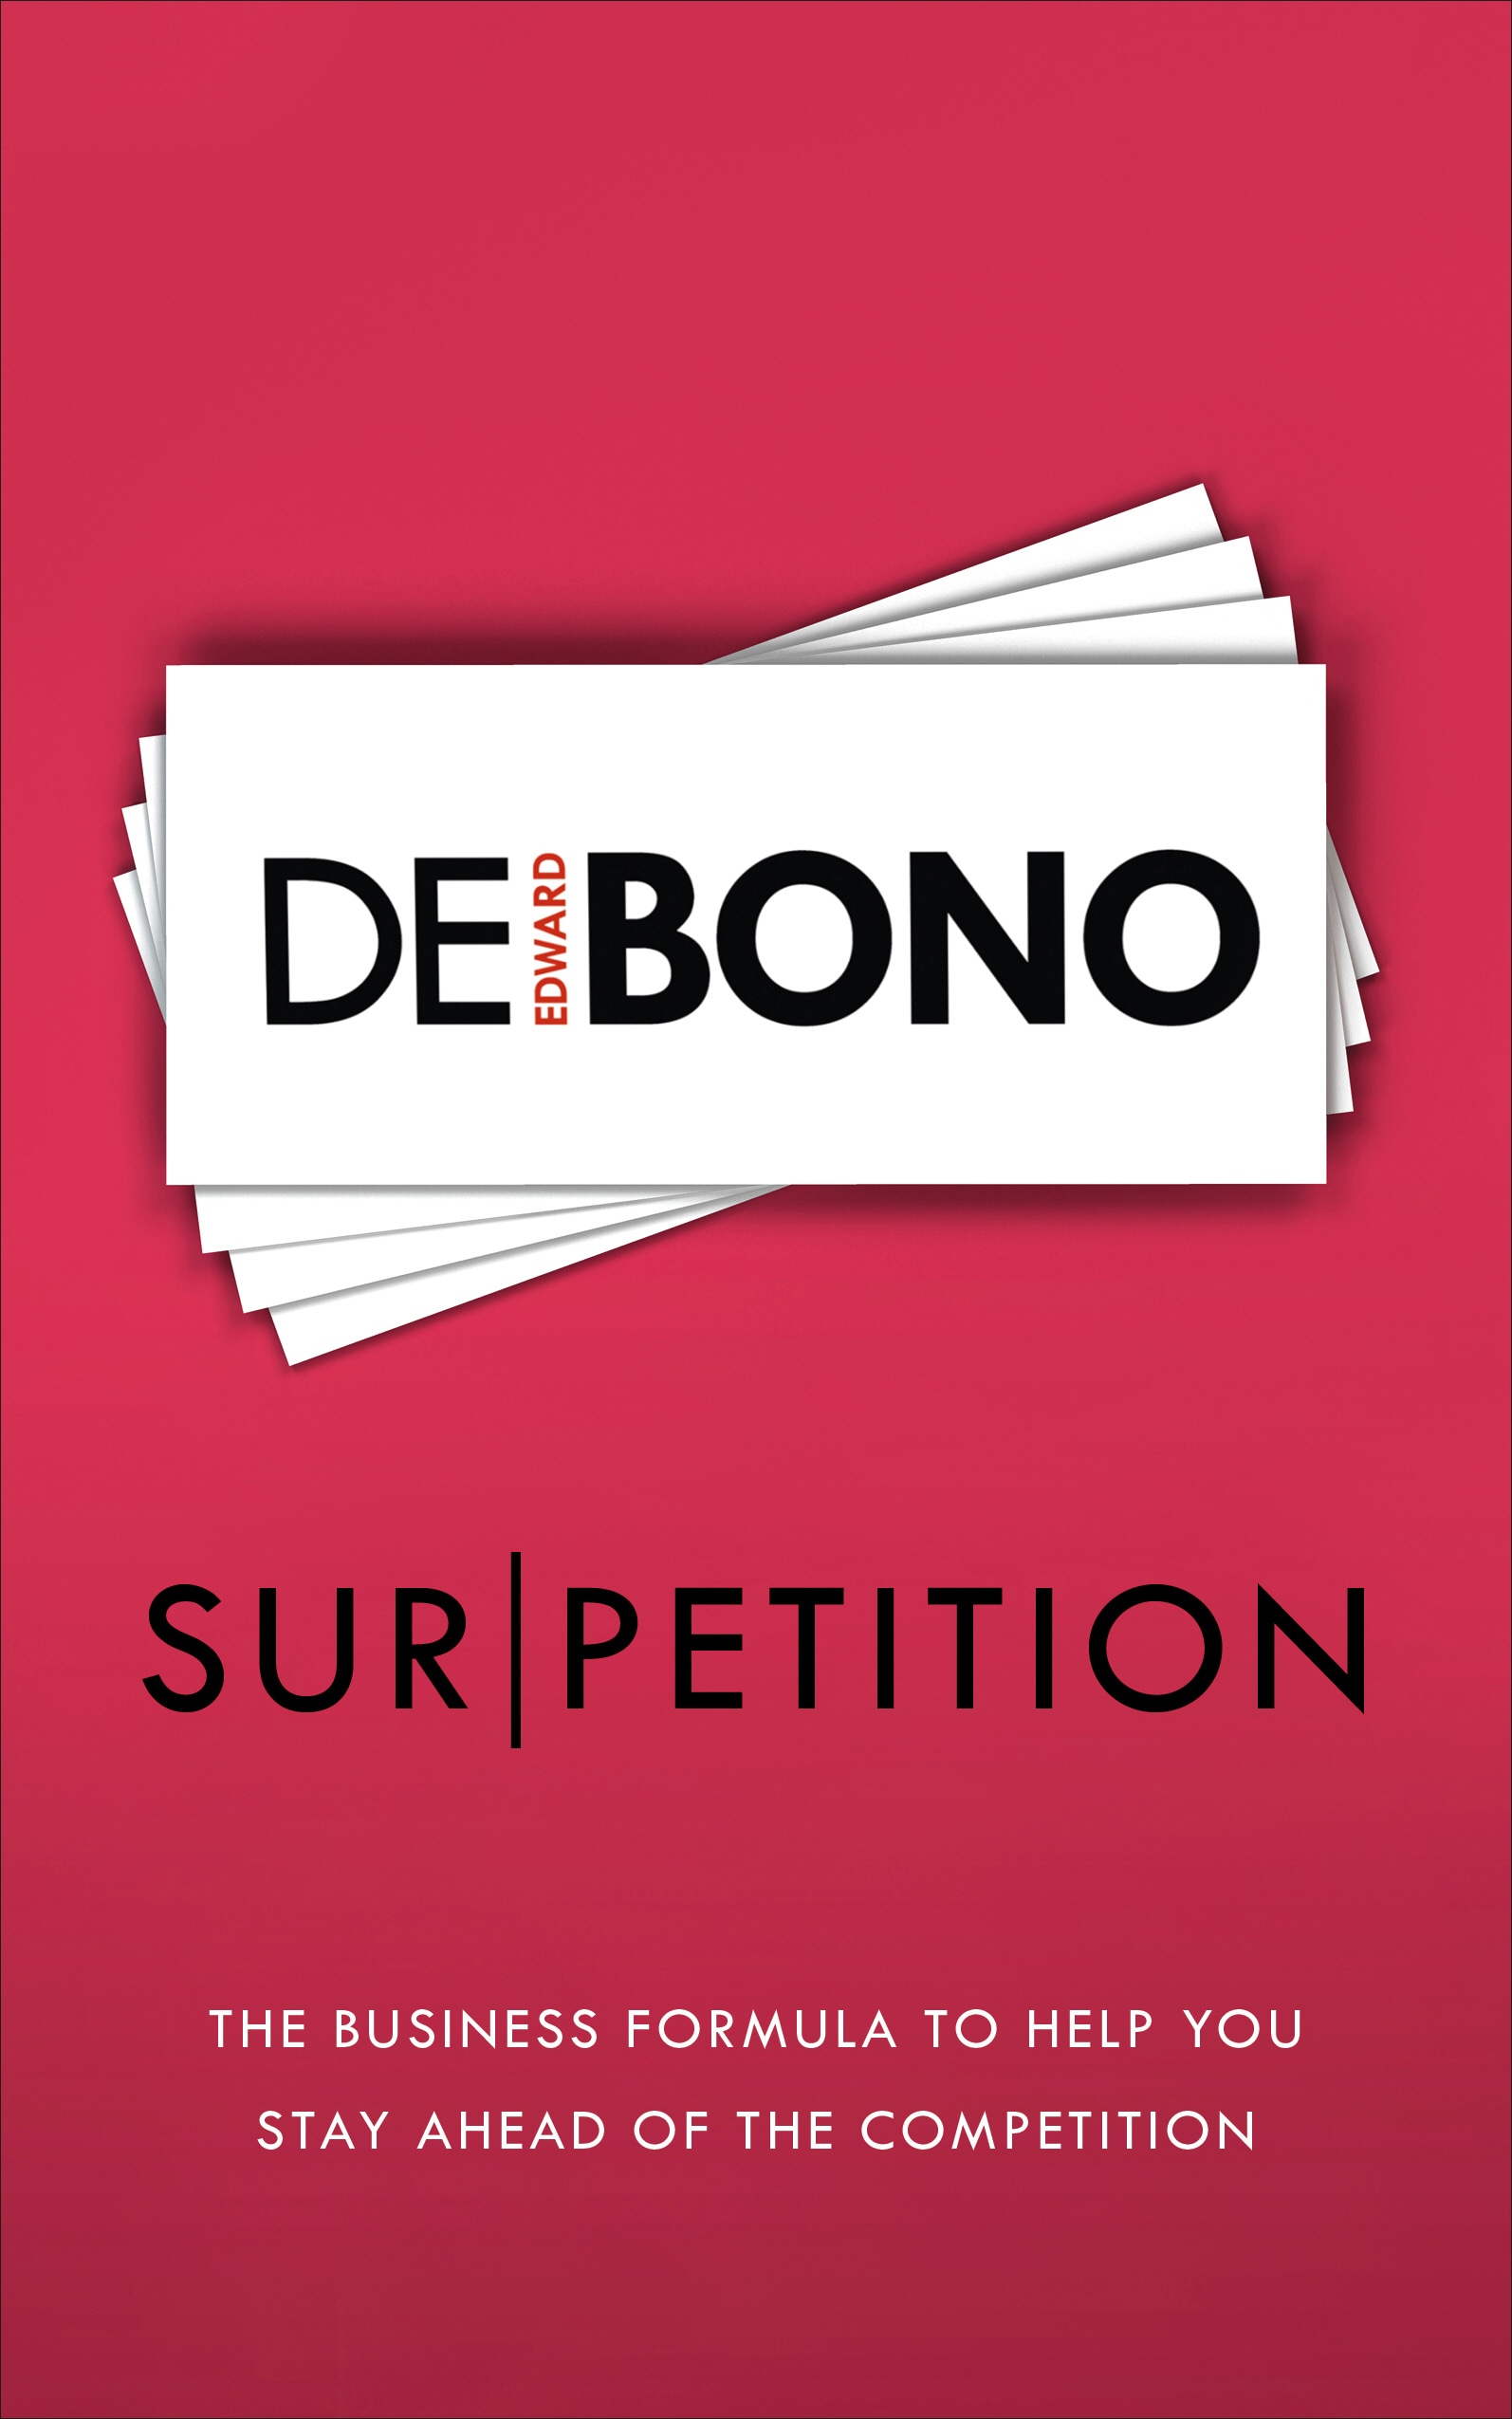 Book “Sur/petition” by Edward de Bono — August 1, 2019